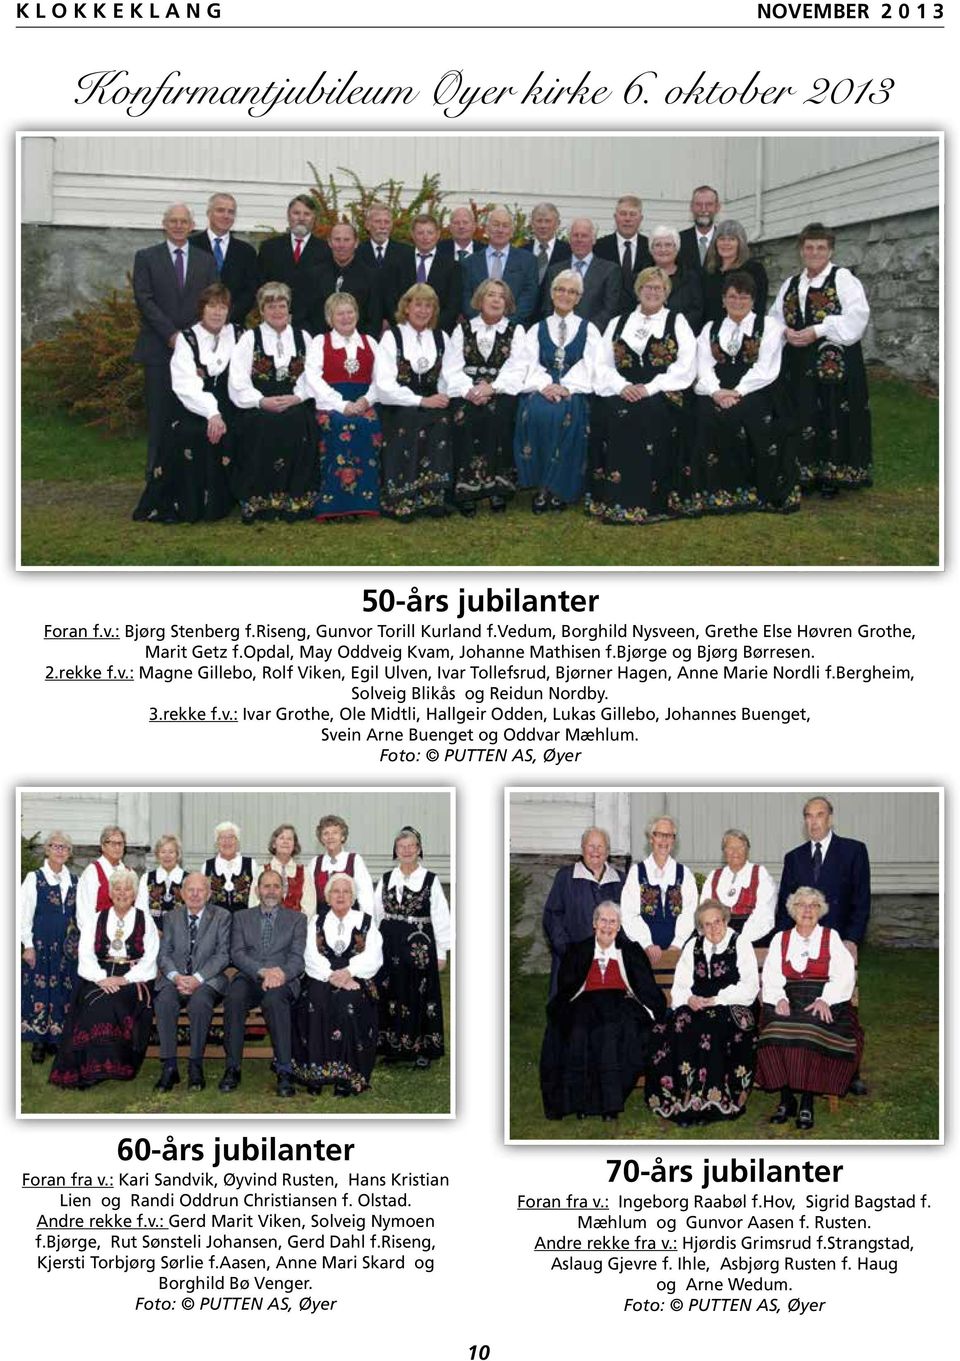 bergheim, Solveig Blikås og Reidun Nordby. 3.rekke f.v.: Ivar Grothe, Ole Midtli, Hallgeir Odden, Lukas Gillebo, Johannes Buenget, Svein Arne Buenget og Oddvar Mæhlum.